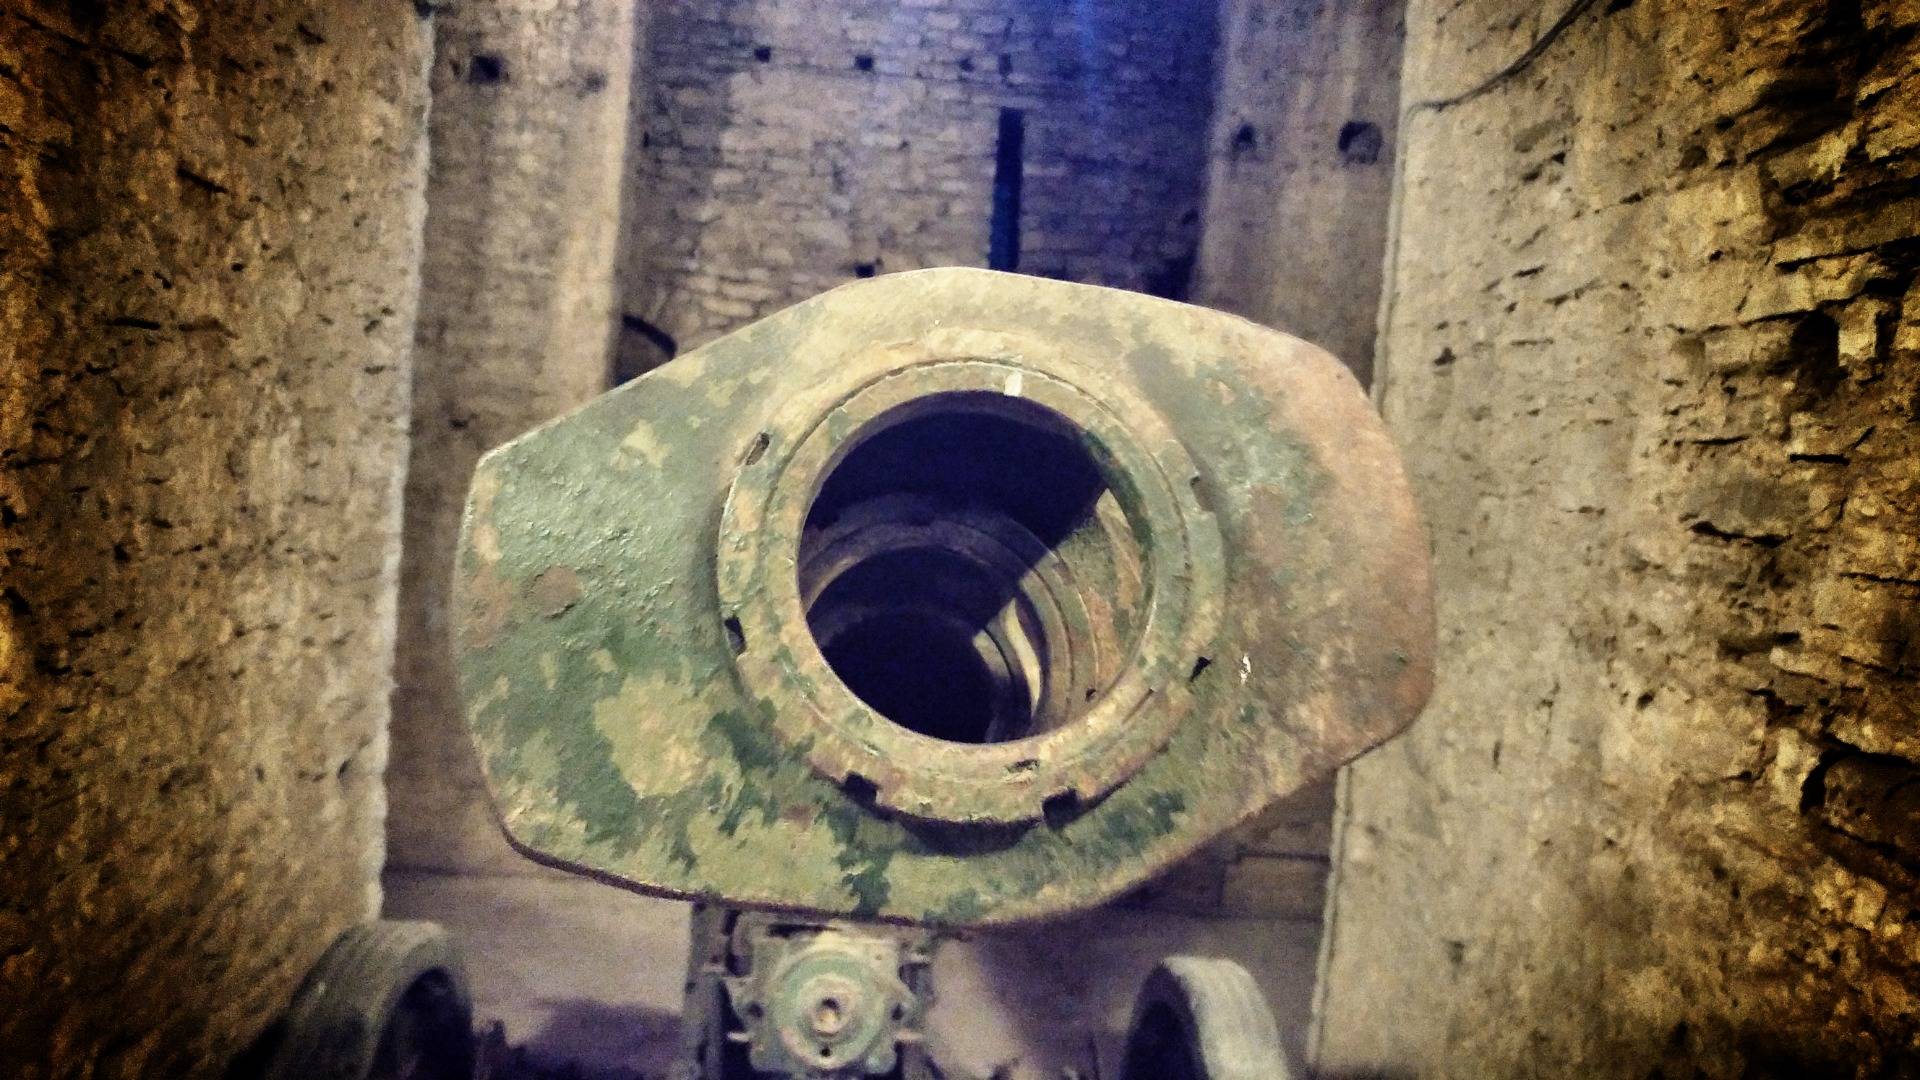 The muzzle of a Italian cannon